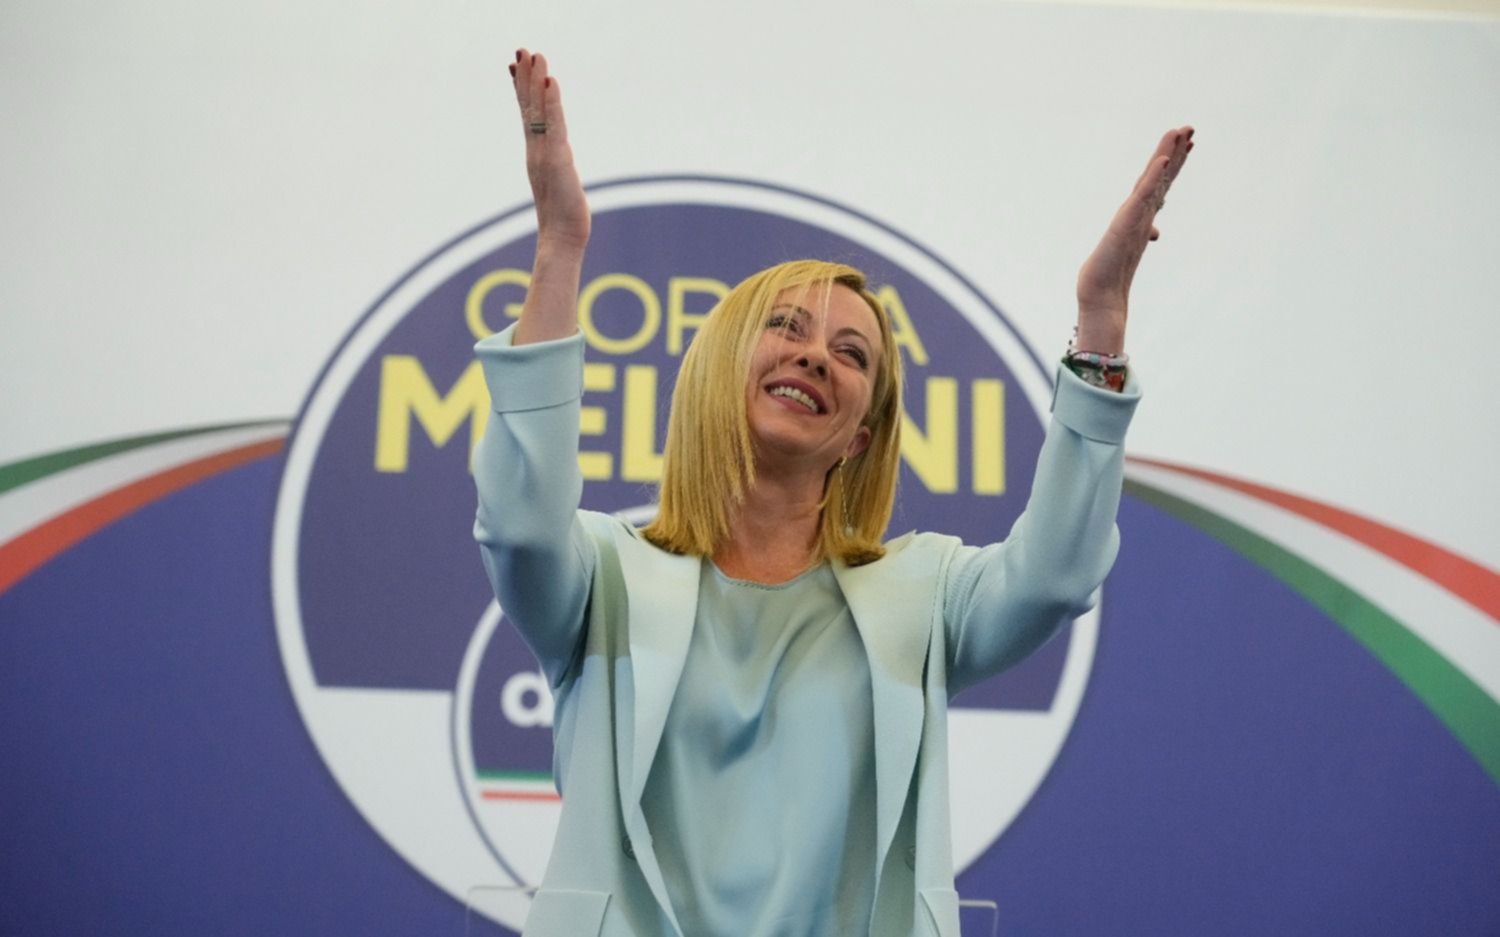 Quién es Giorgia Meloni, la postfascista que arrasó en las elecciones y gobernará Italia